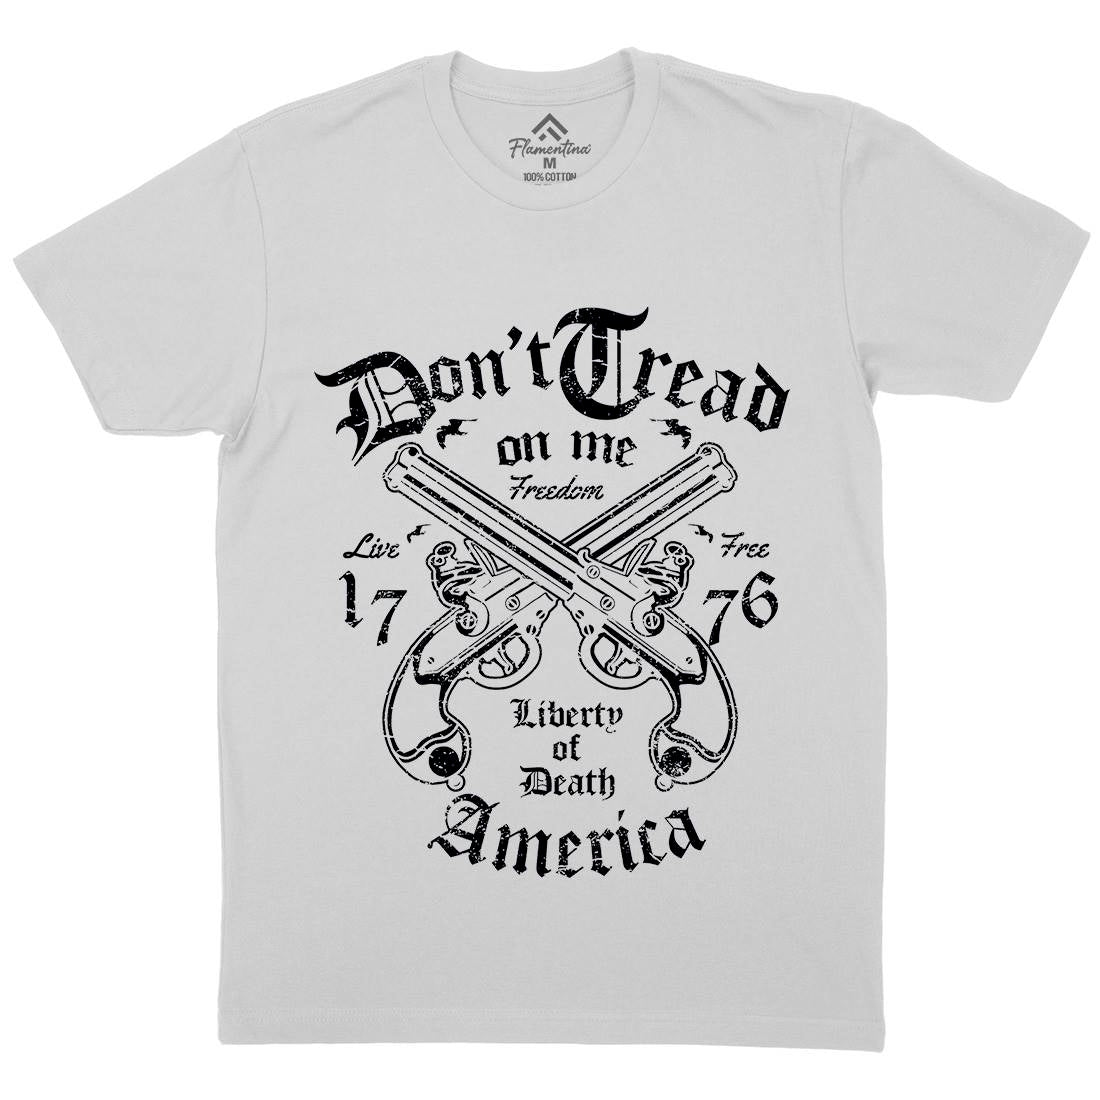 Liberty Of Death Mens Crew Neck T-Shirt American A084